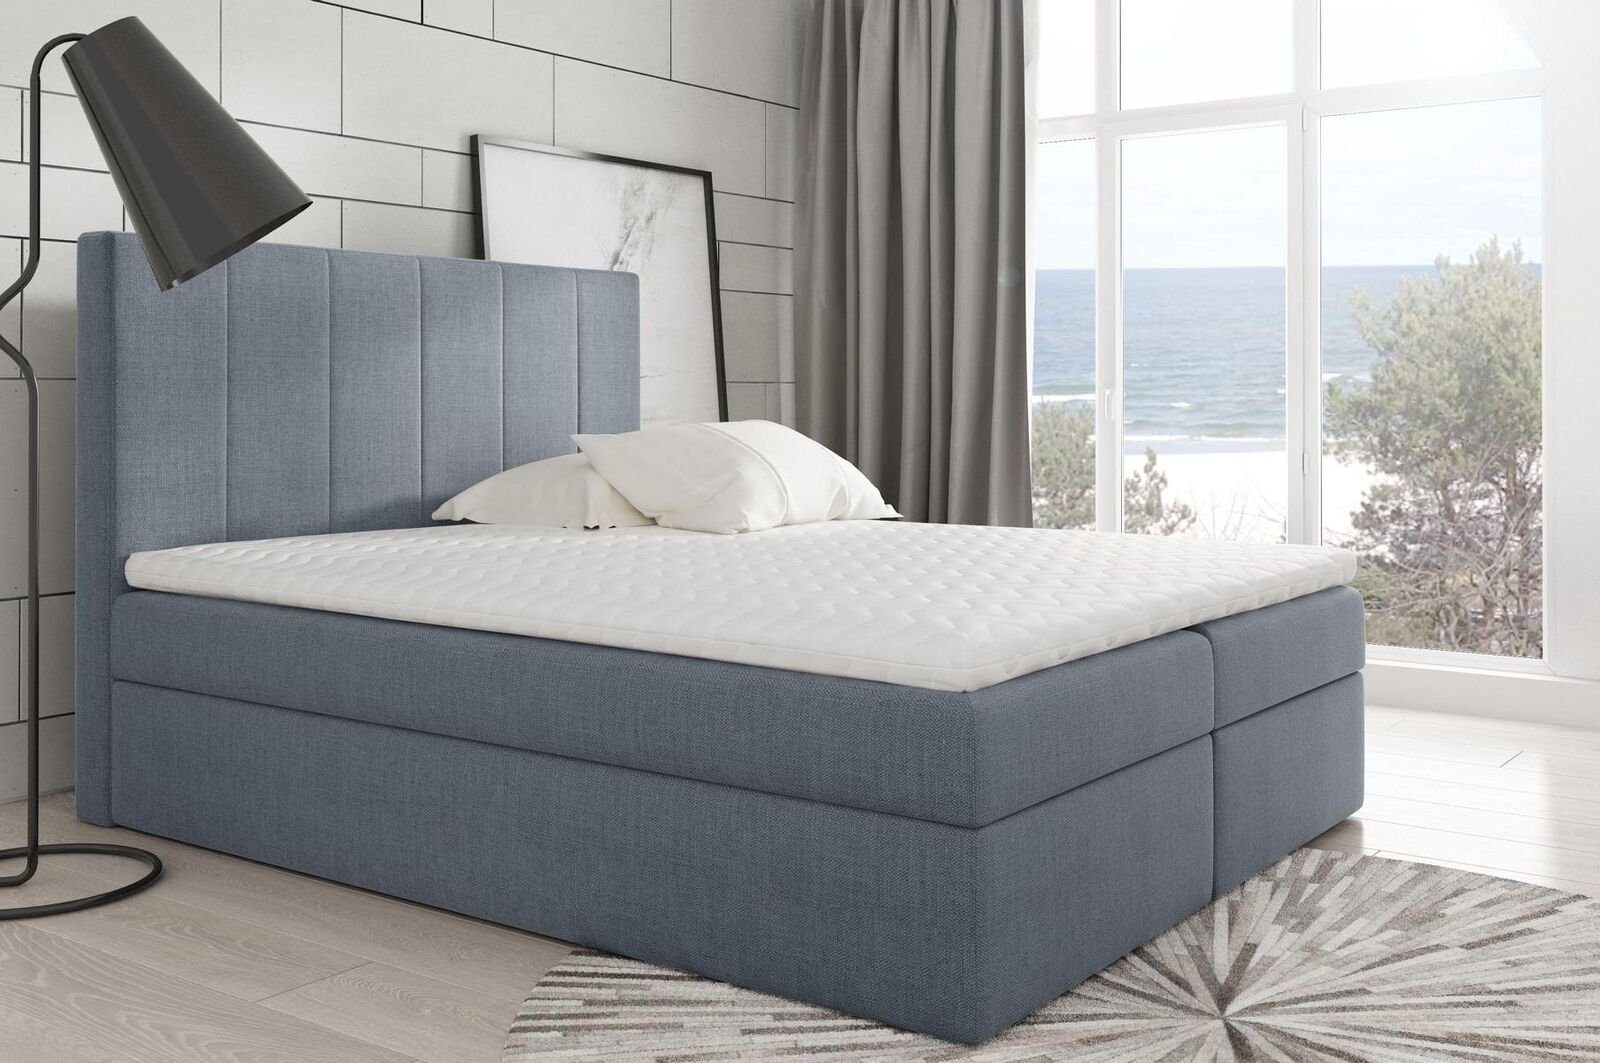 JVmoebel Bett, Modernes Bett Schlafzimmer Betten Stoff Boxspringbett Textil Design Silber